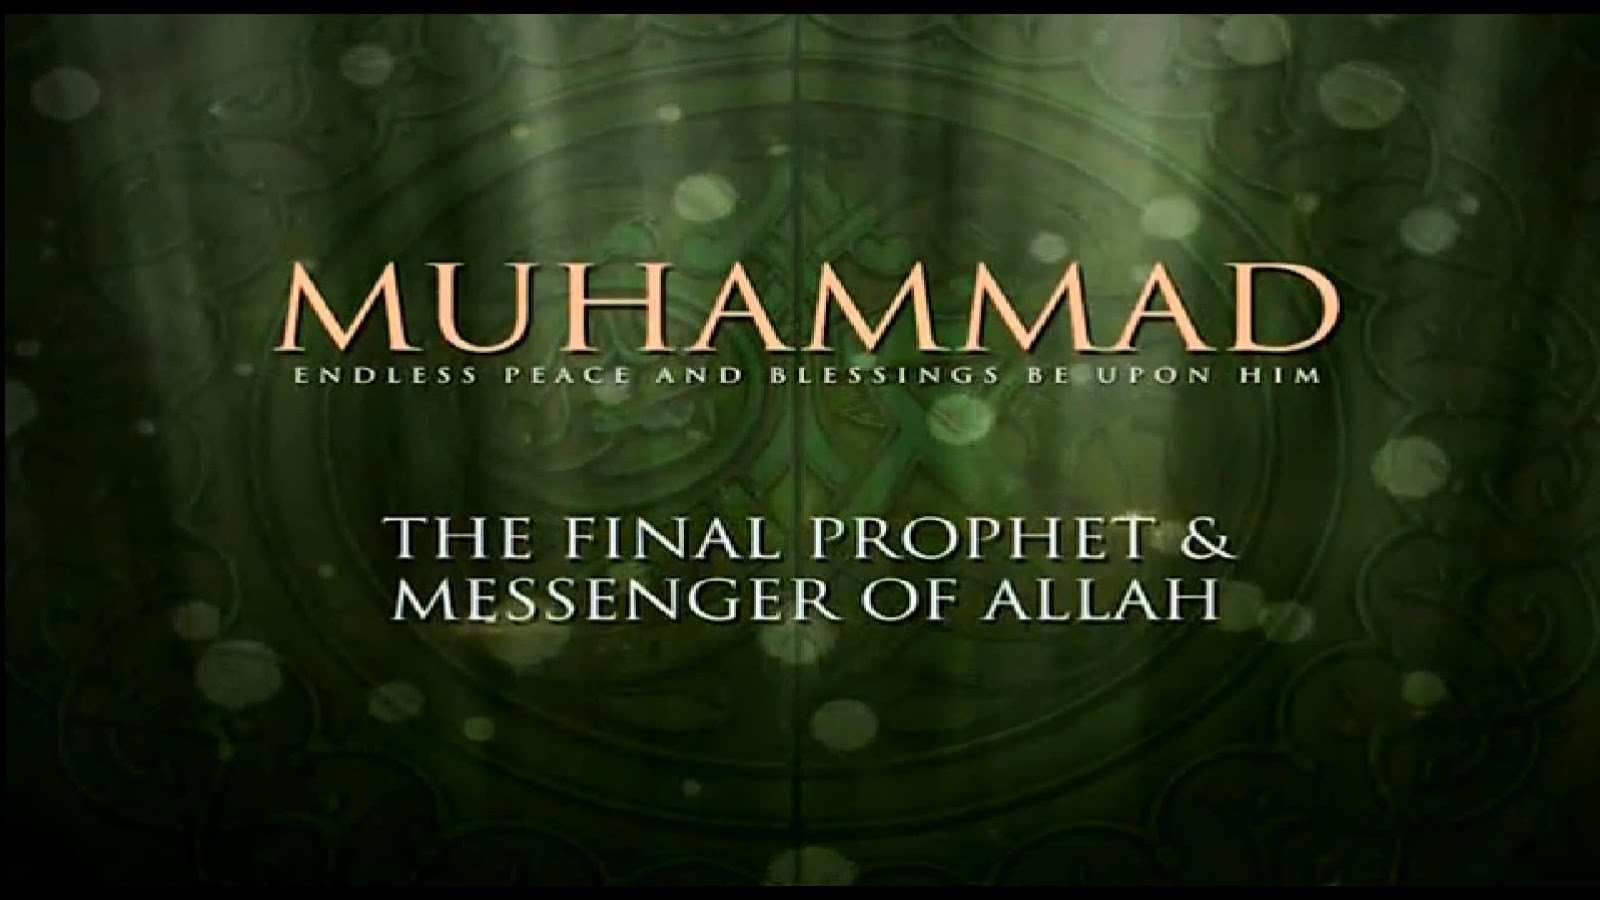 Prophet Muhammad